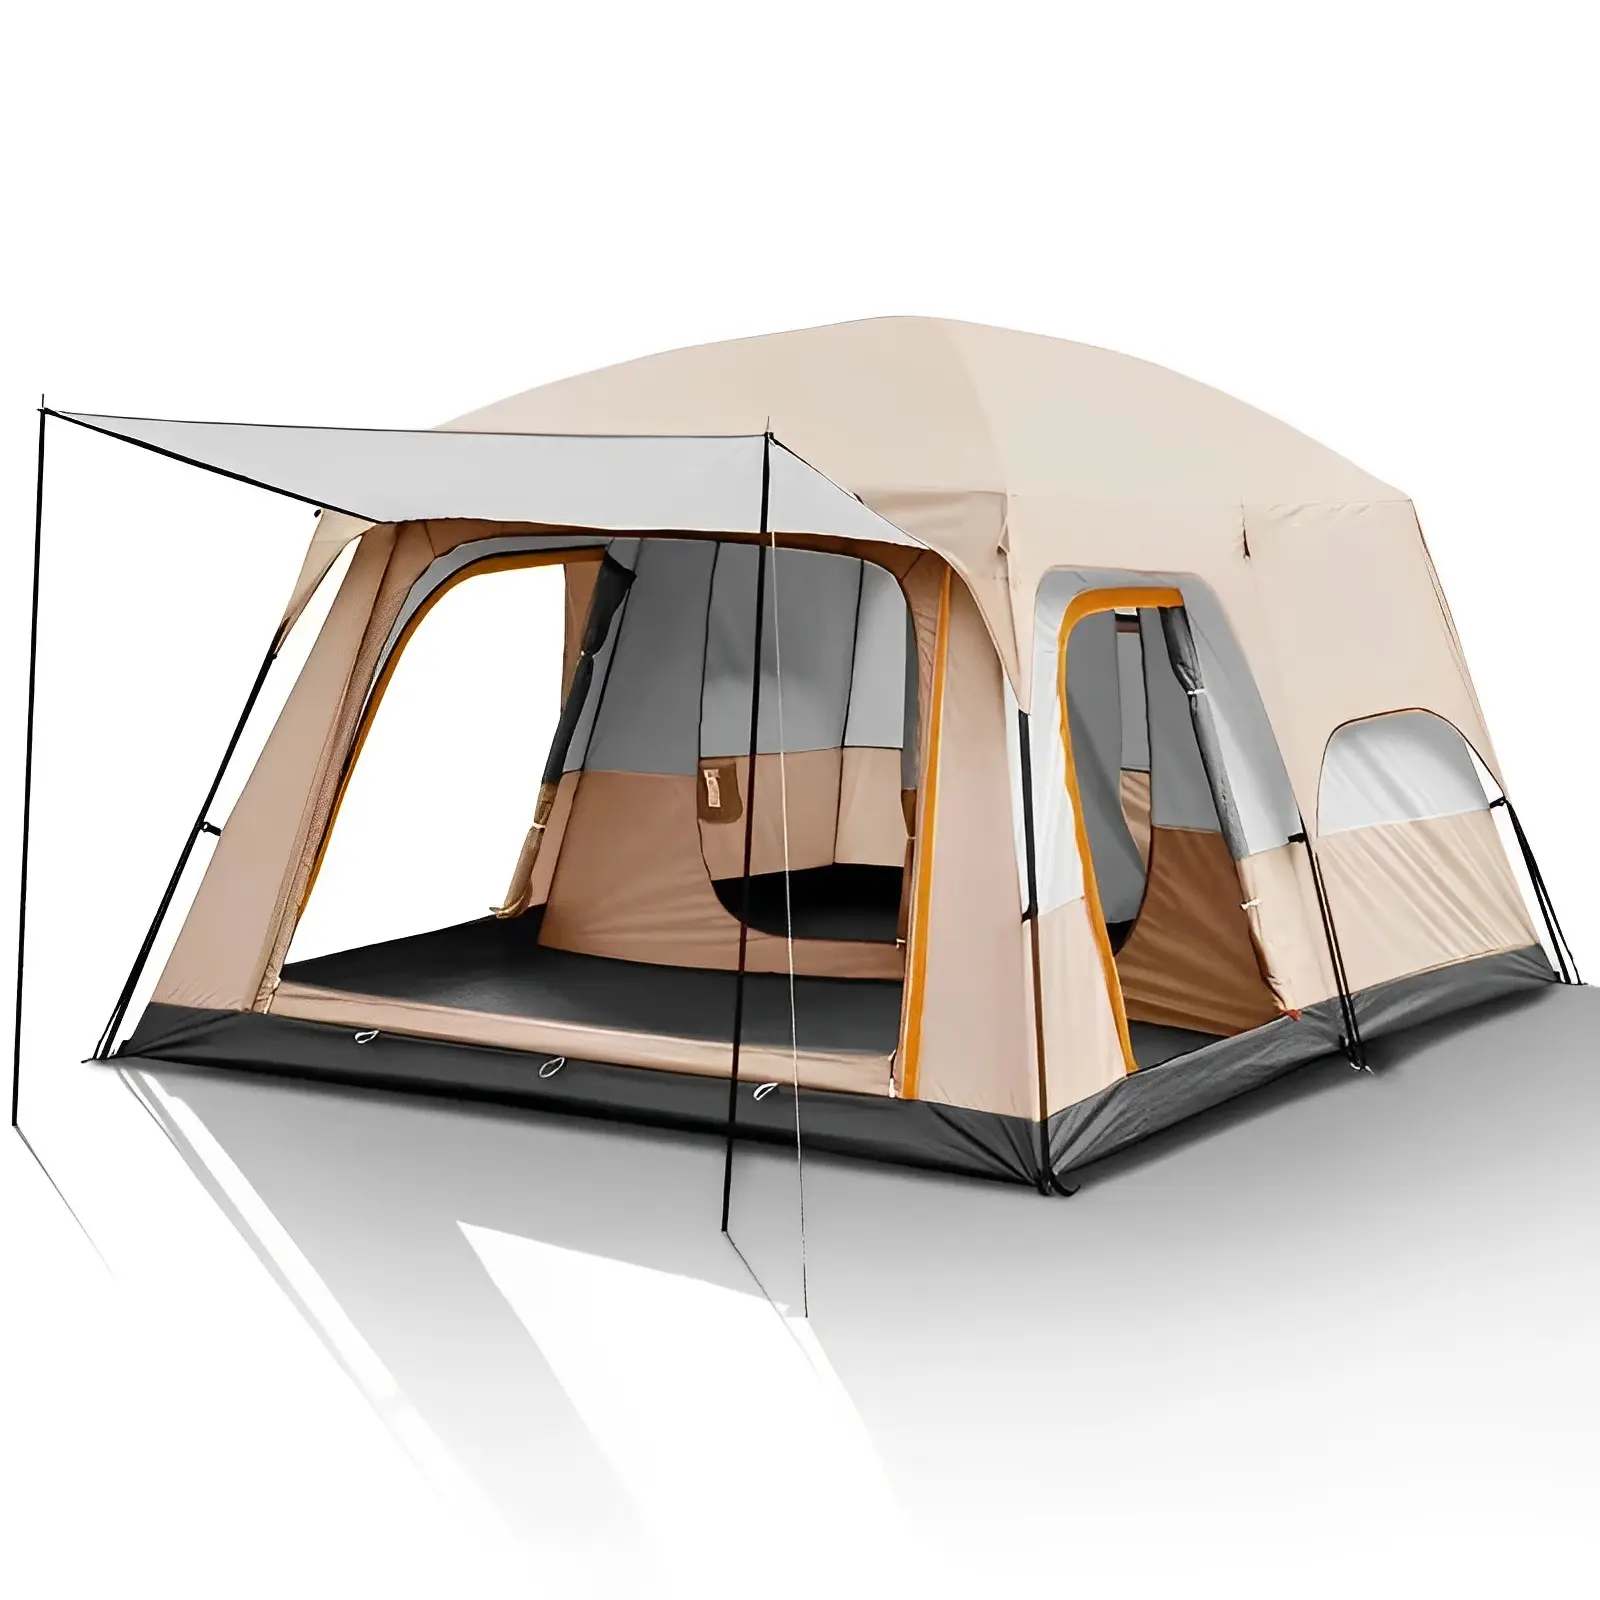 Große tragbare wasserdichte Familien camping zelte mit zwei Räumen und einer Halle im Freien